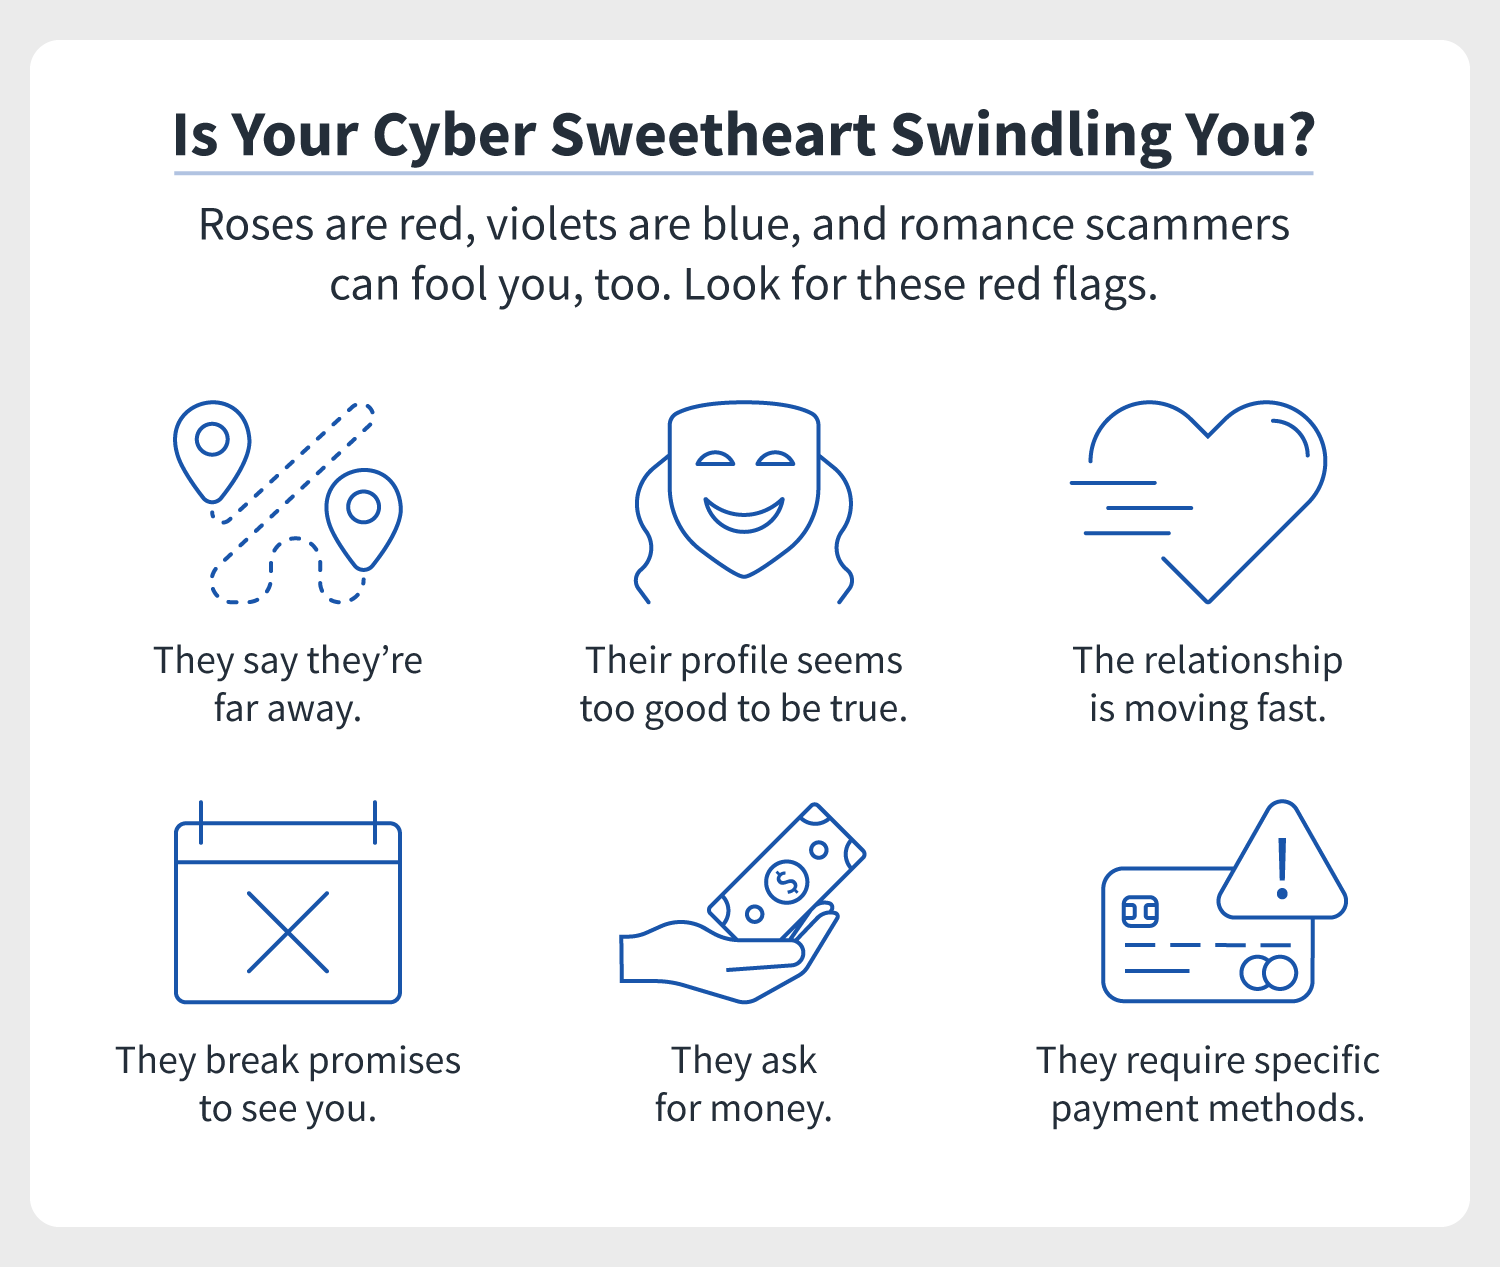 Romantic scammers men